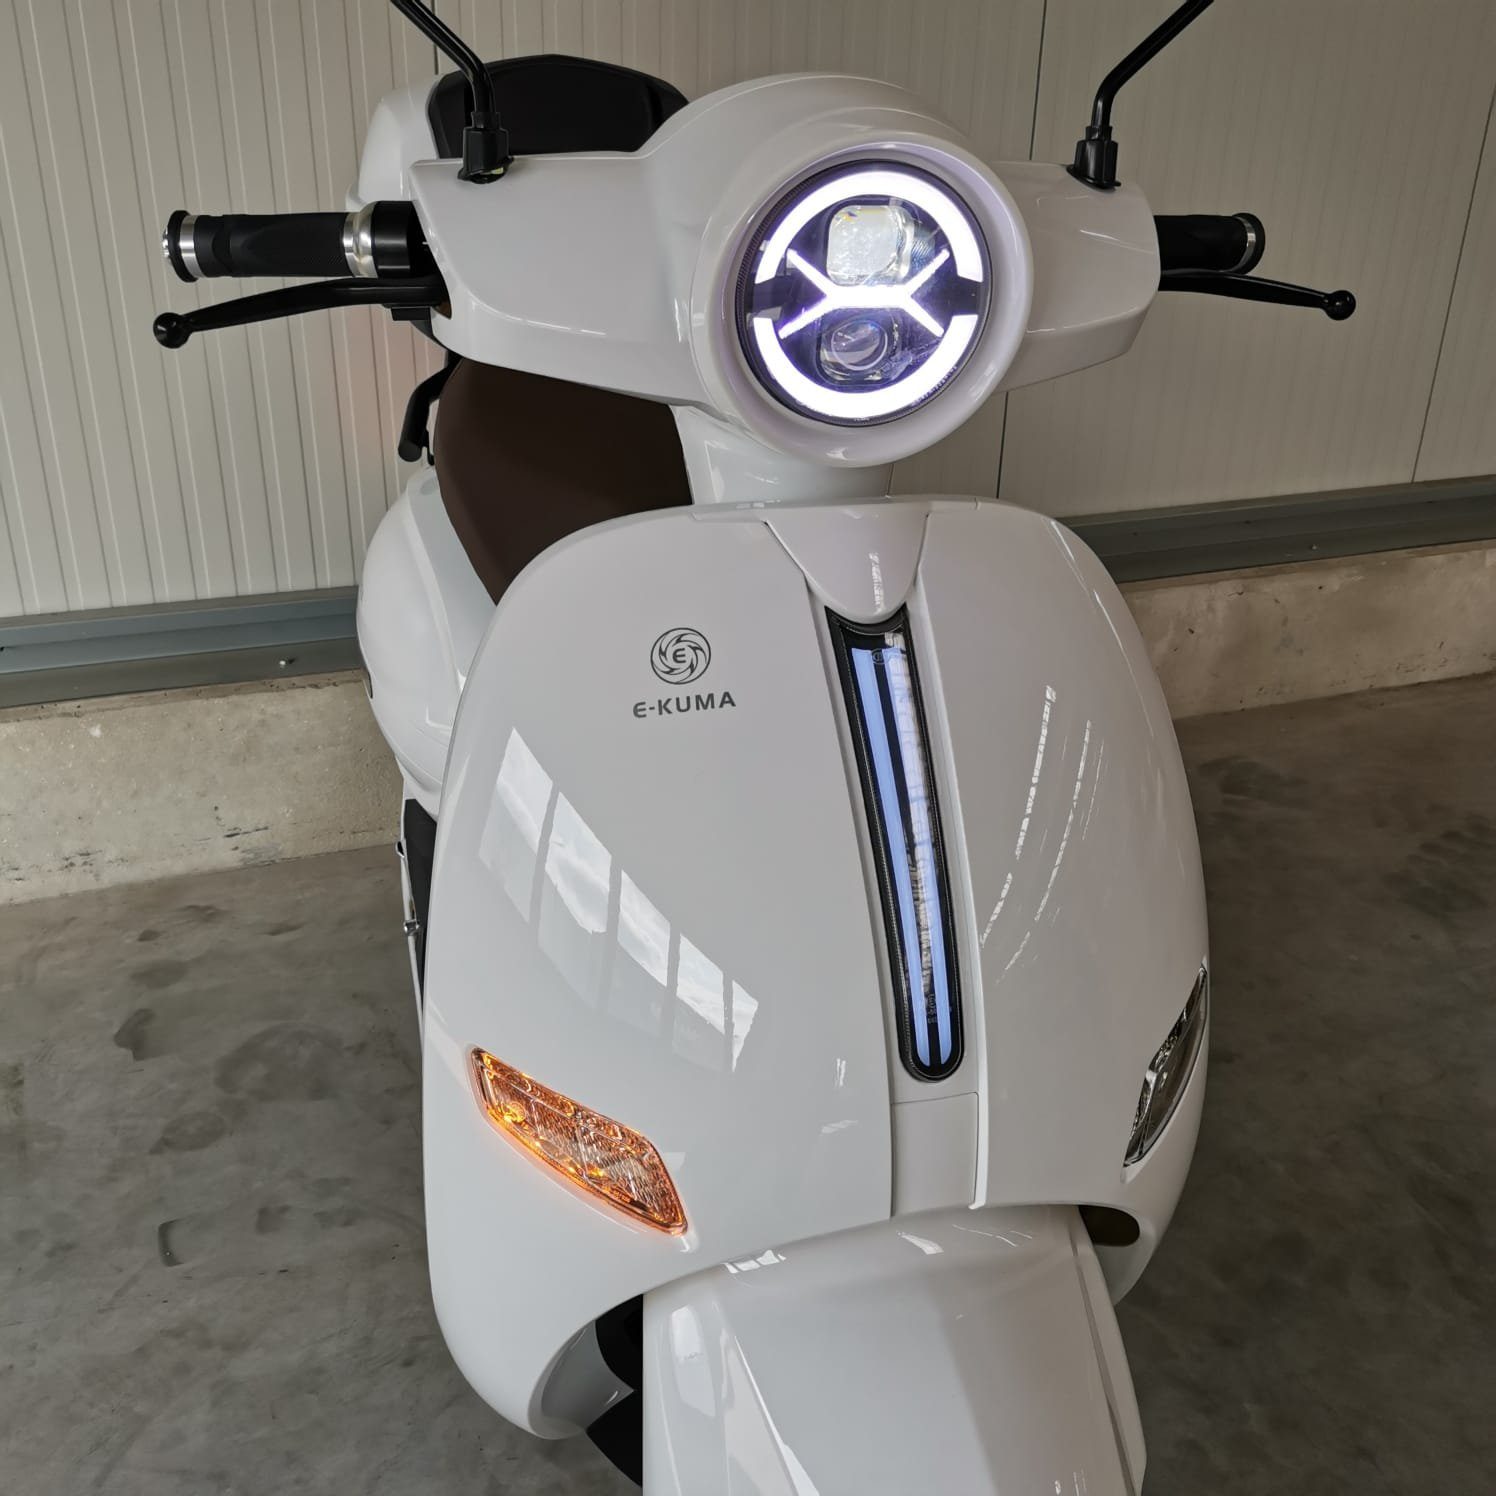 E-Motorroller 8000,00 Topcase Sun-S+, e-kuma 90 km/h, inklusive W, mattschwarz